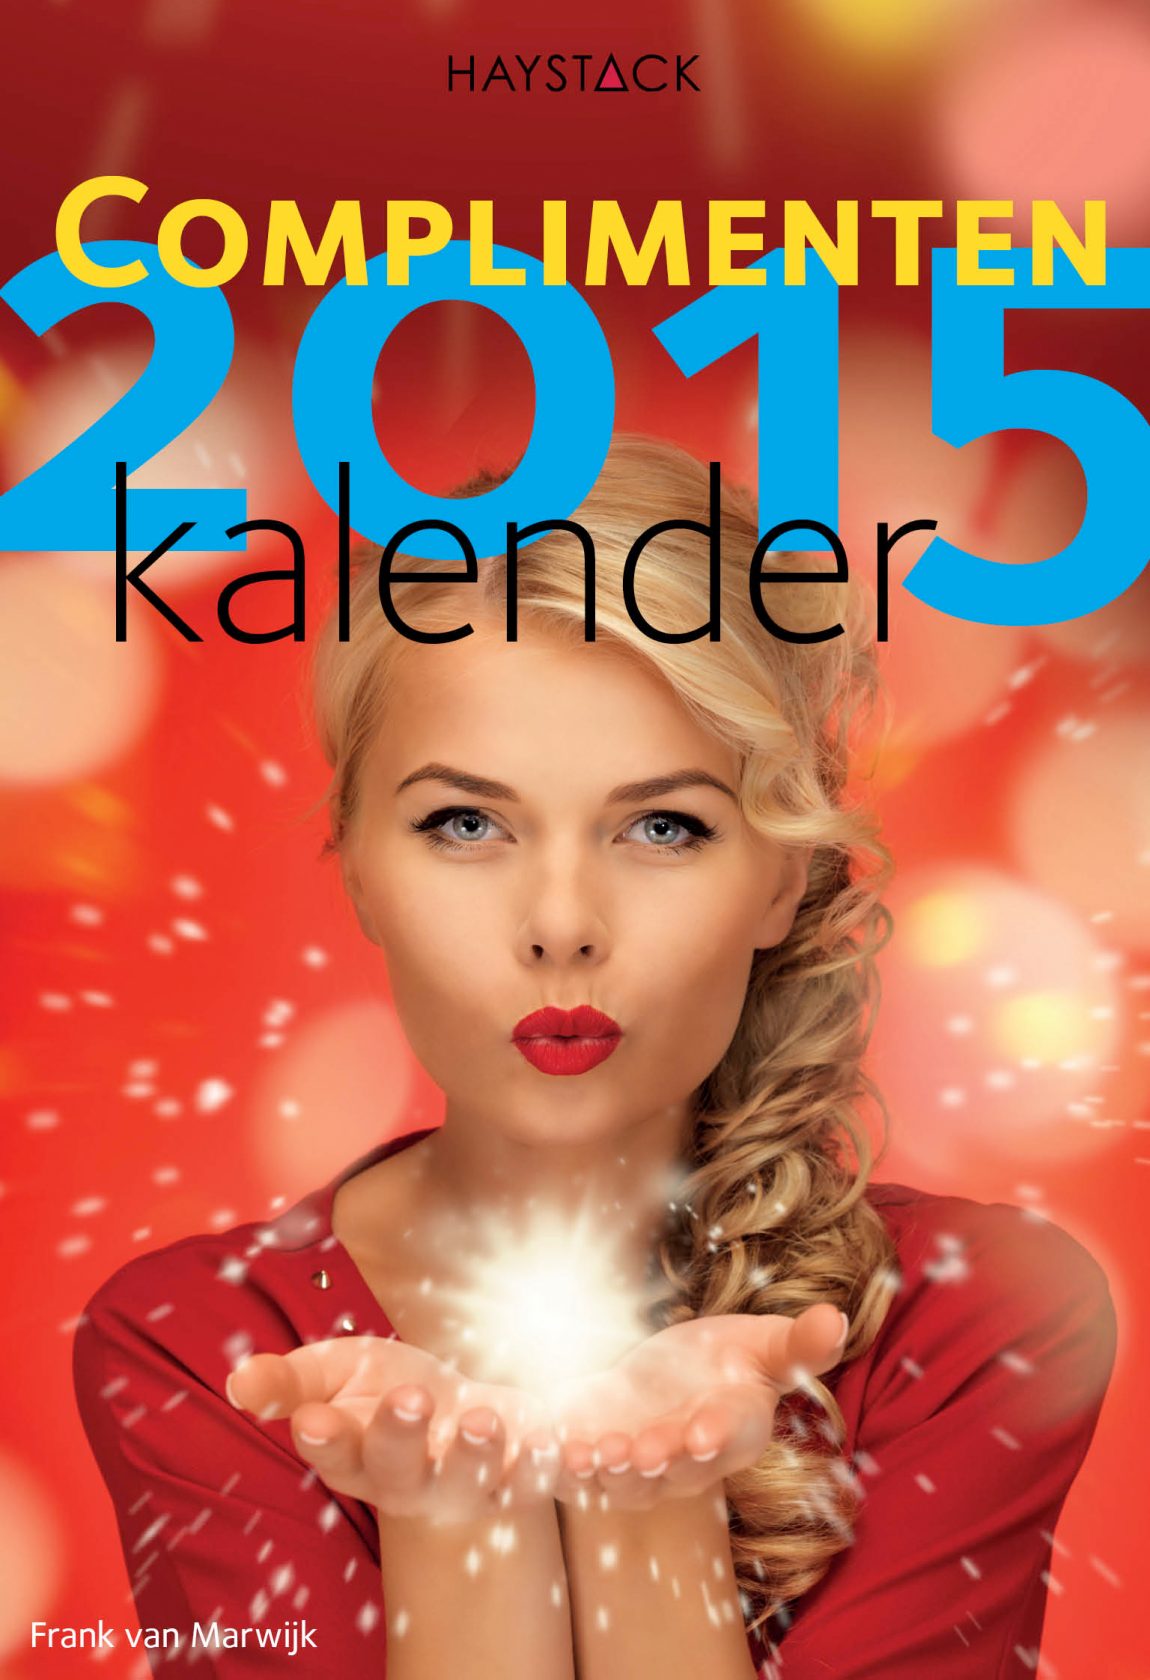 Complimentenkalender 2015 Haystack Nya Interieurontwerp